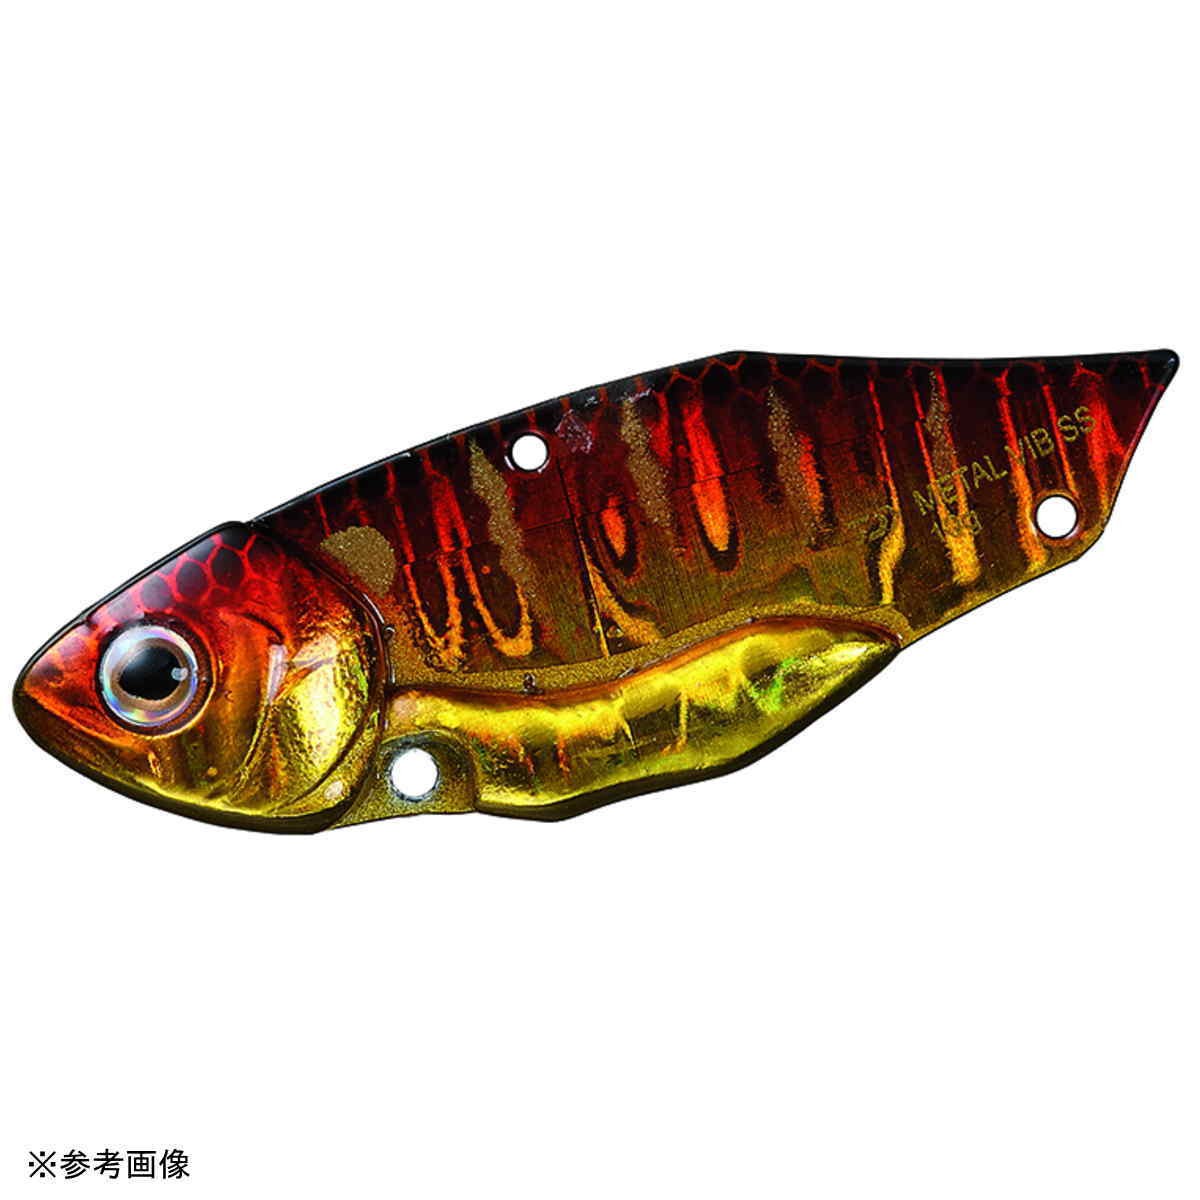 DAIWA（釣り） メタルバイブ SS 5g アカキンギル バイブレーションルアーの商品画像